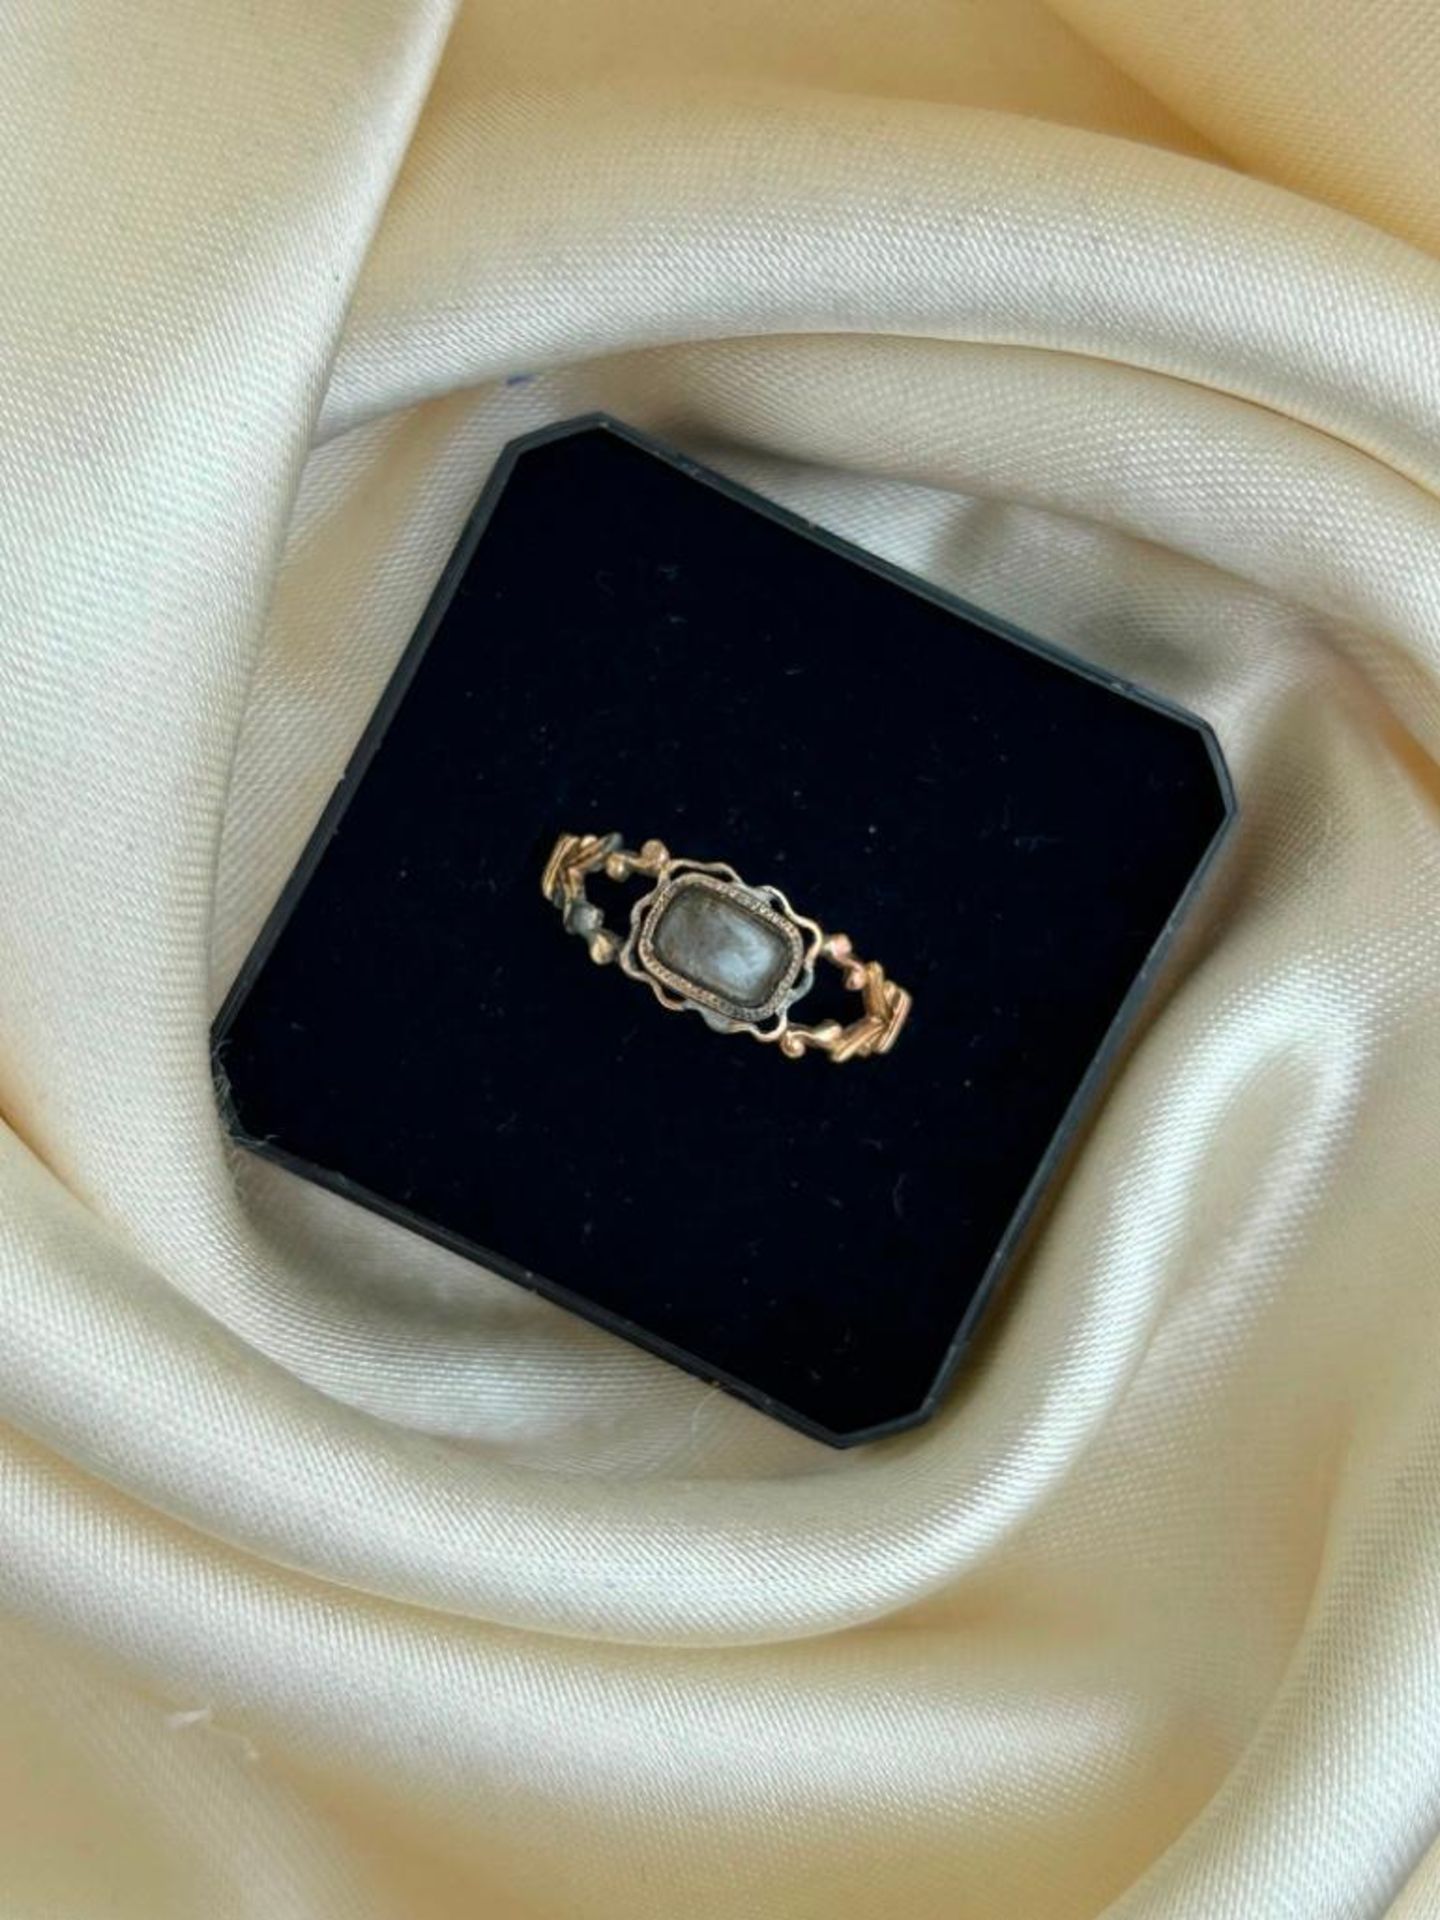 Antique Gold Georgian Era Locket Front Ring - Image 3 of 5